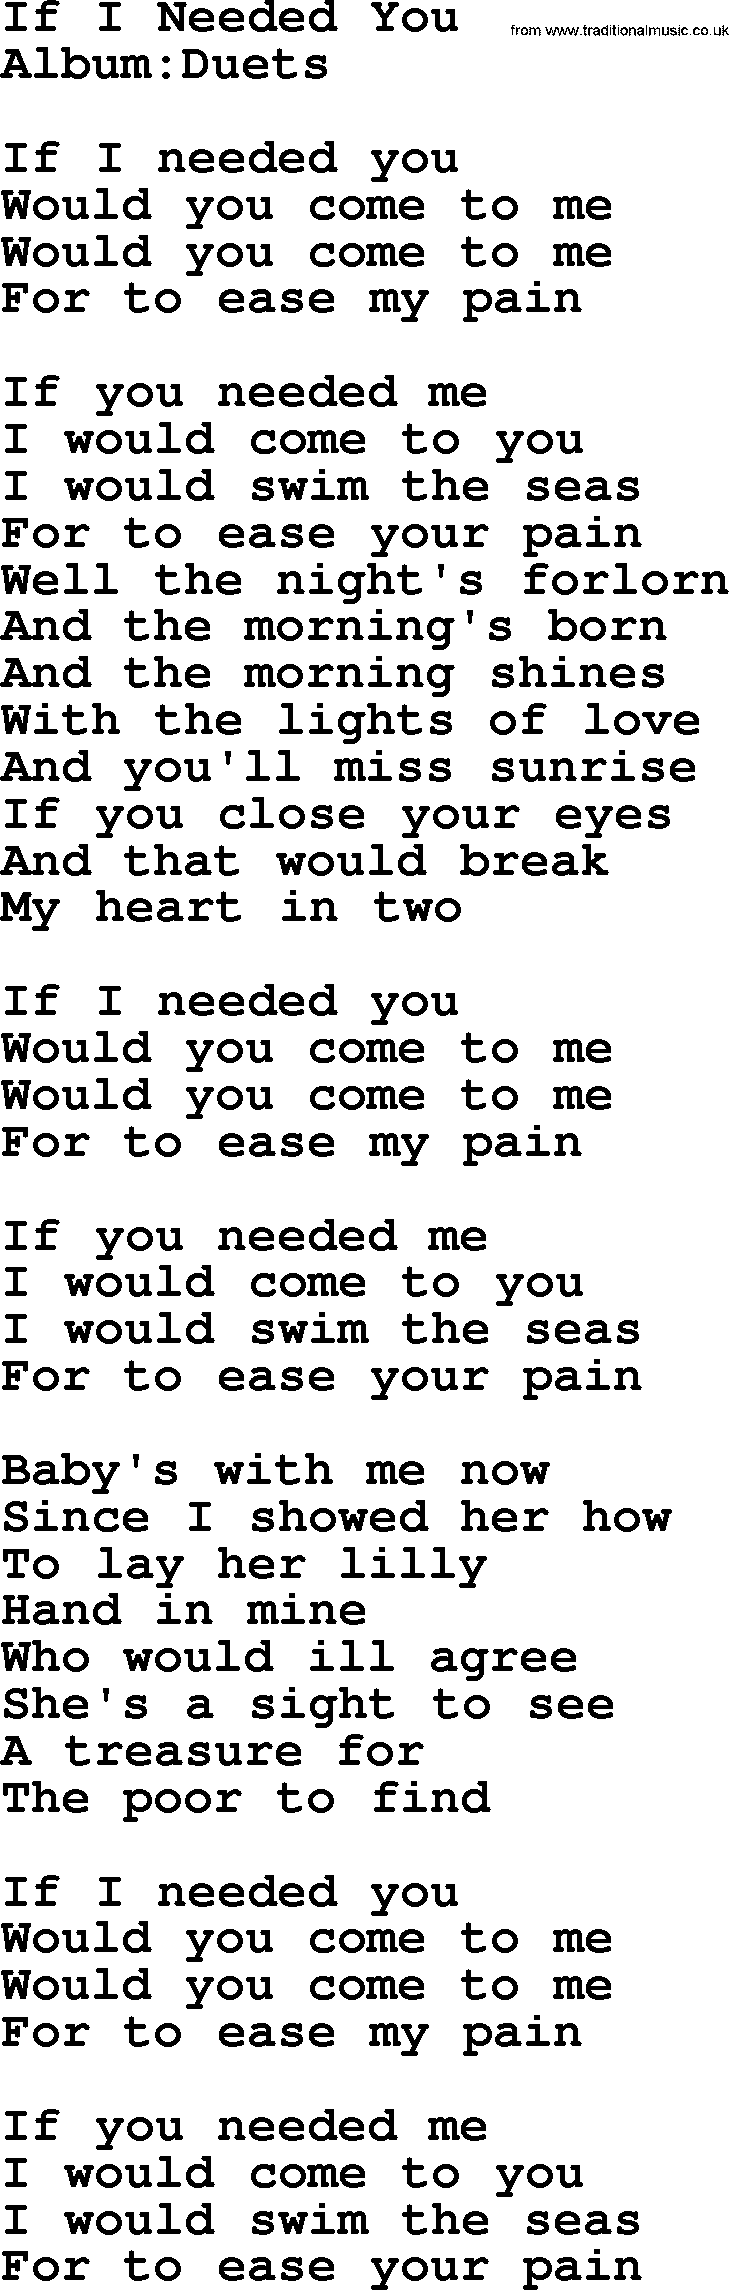 Emmylou Harris song: If I Needed You lyrics